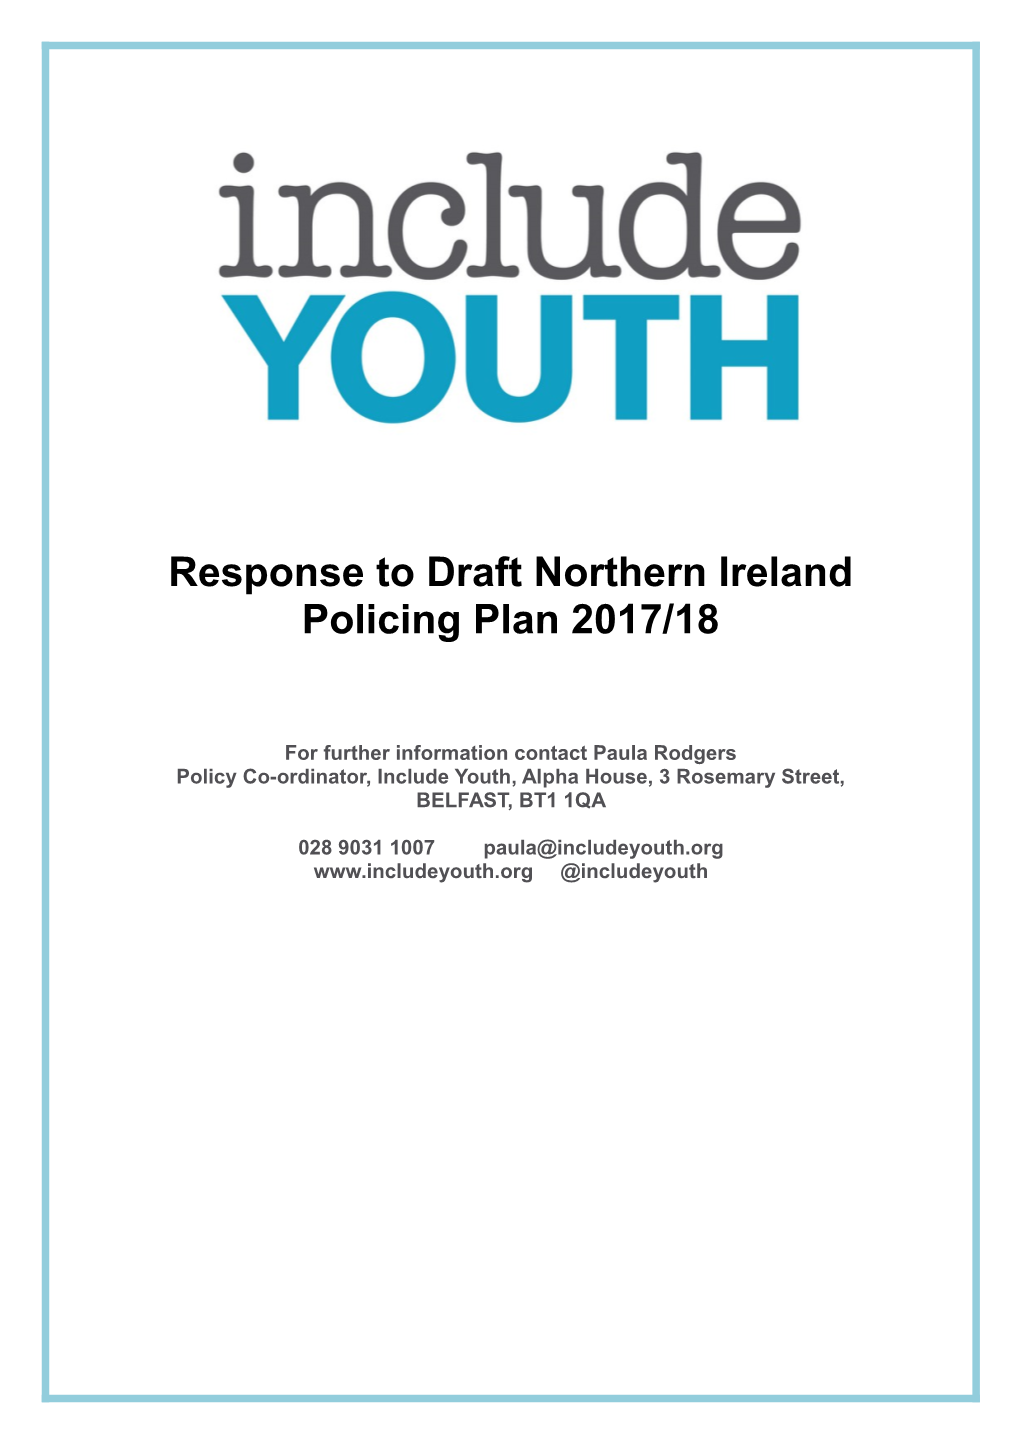 Response to Draft Northern Ireland Policing Plan 2017/18